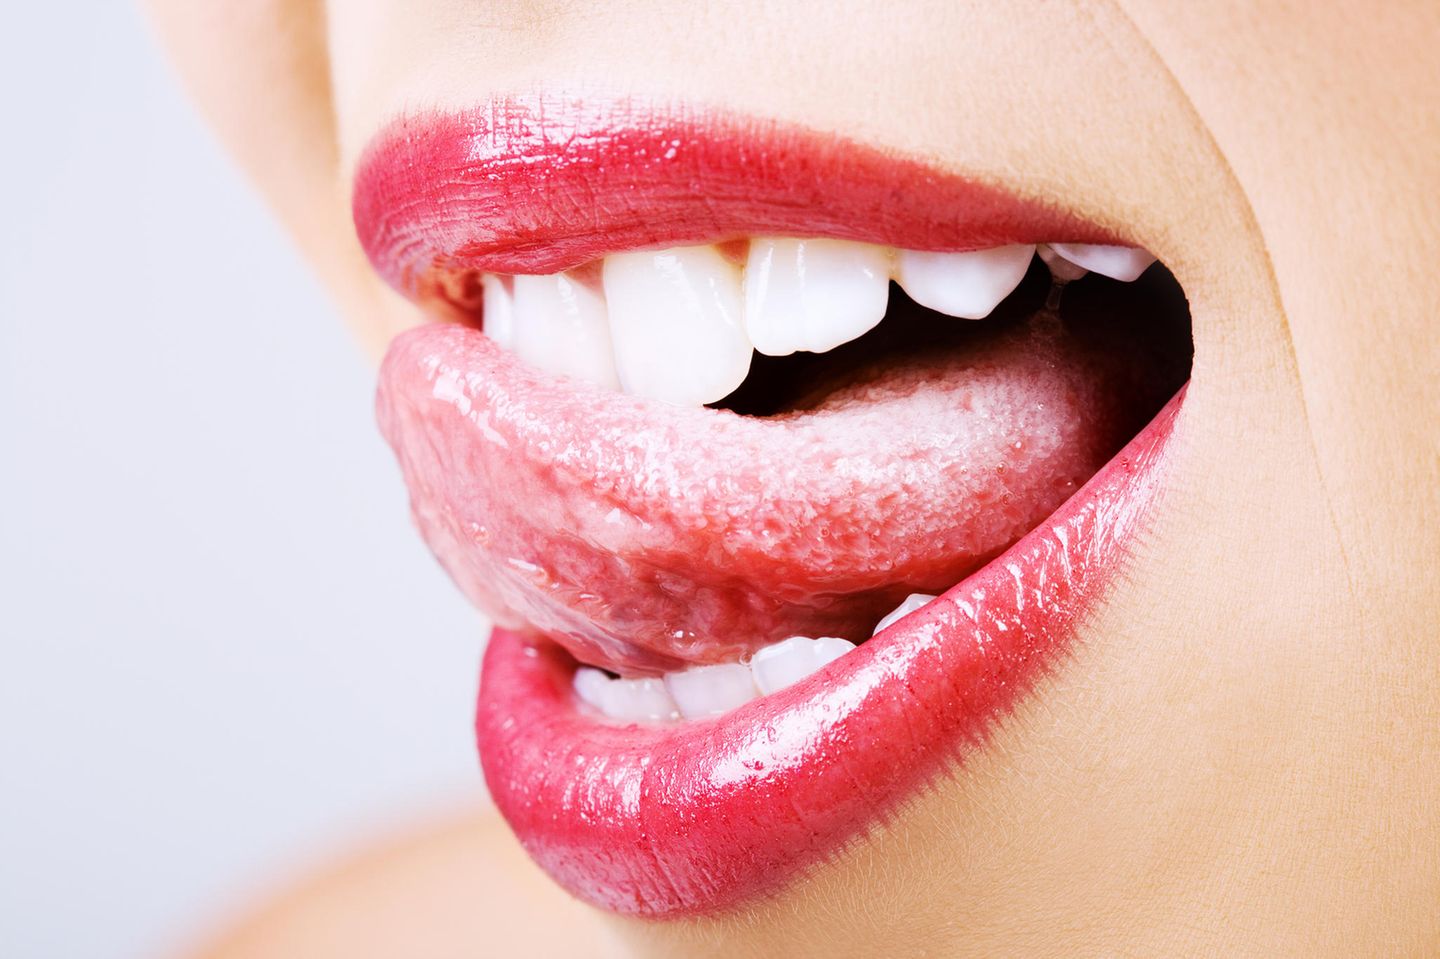 Pickel auf der Zunge: Frau streicht mit Zunge über die Zähne